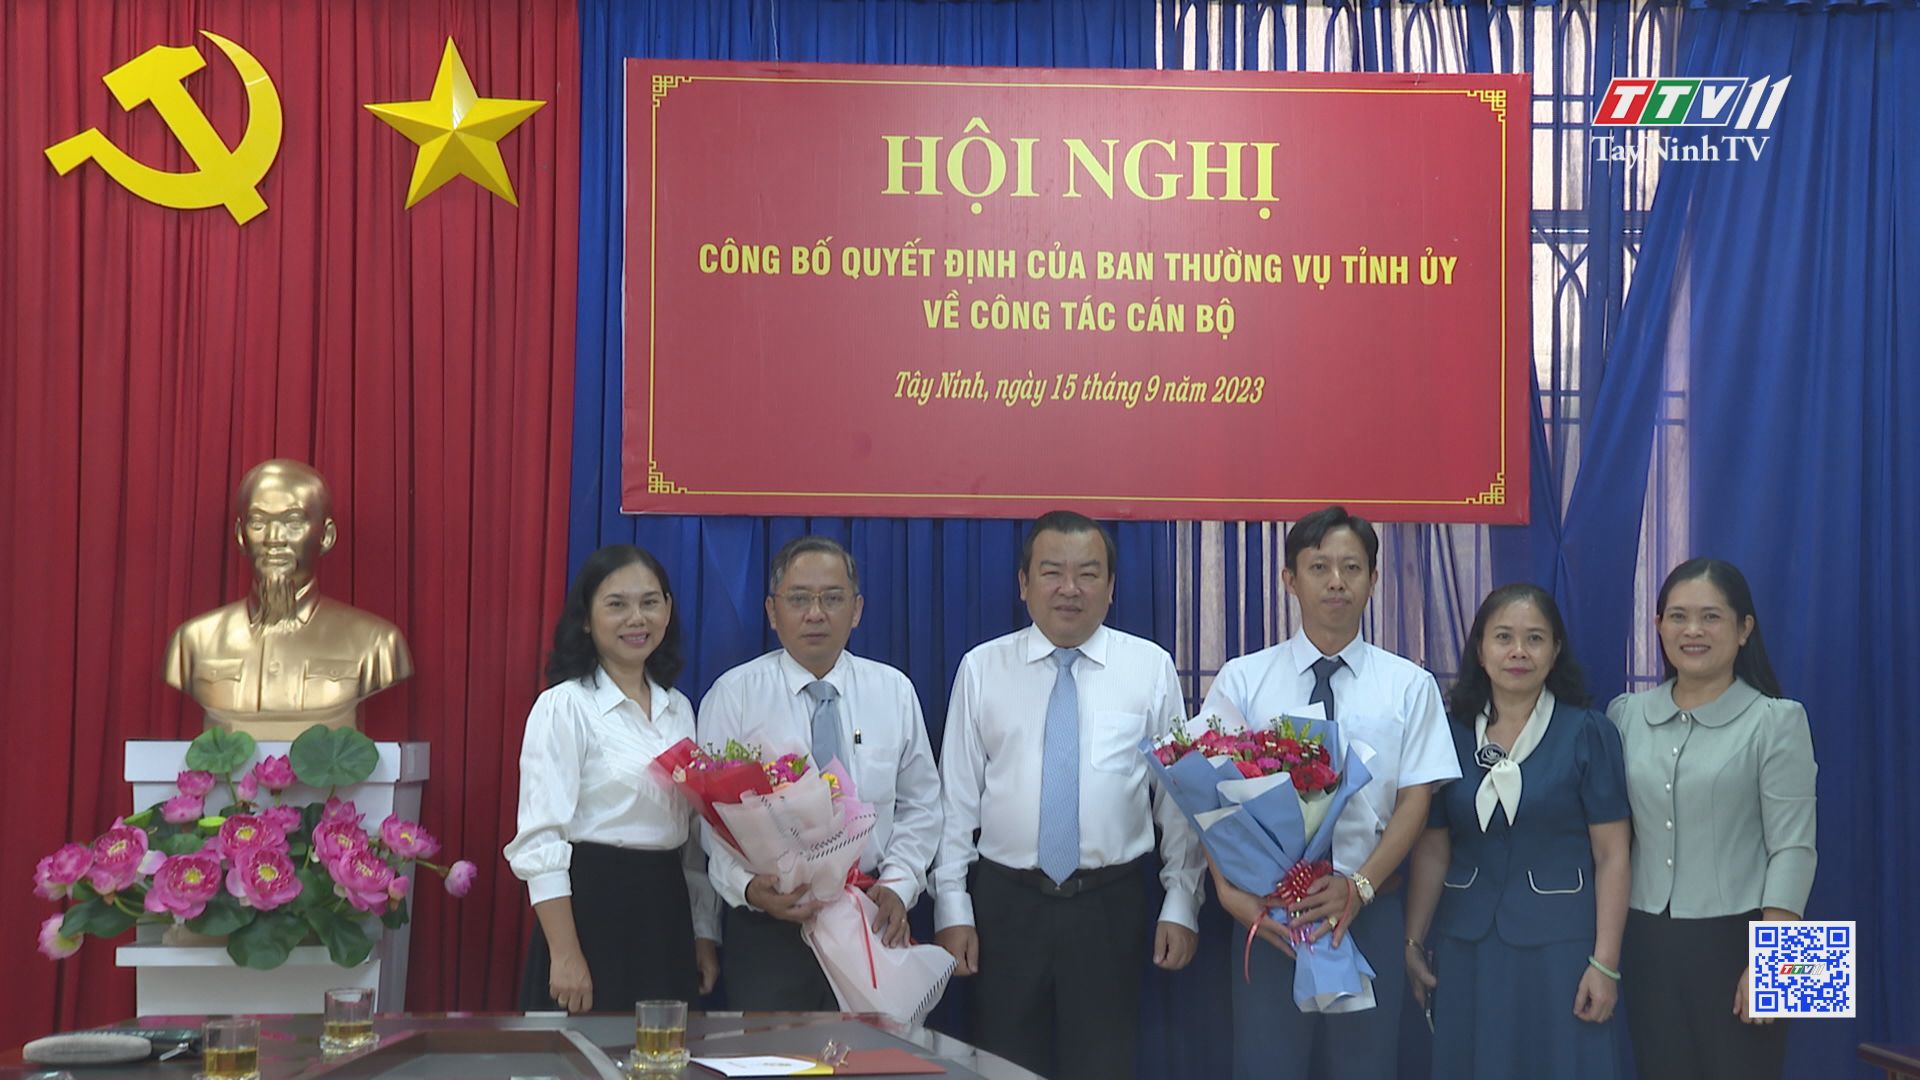 Bổ nhiệm Phó Tổng biên tập Báo Tây Ninh | TayNinhTV